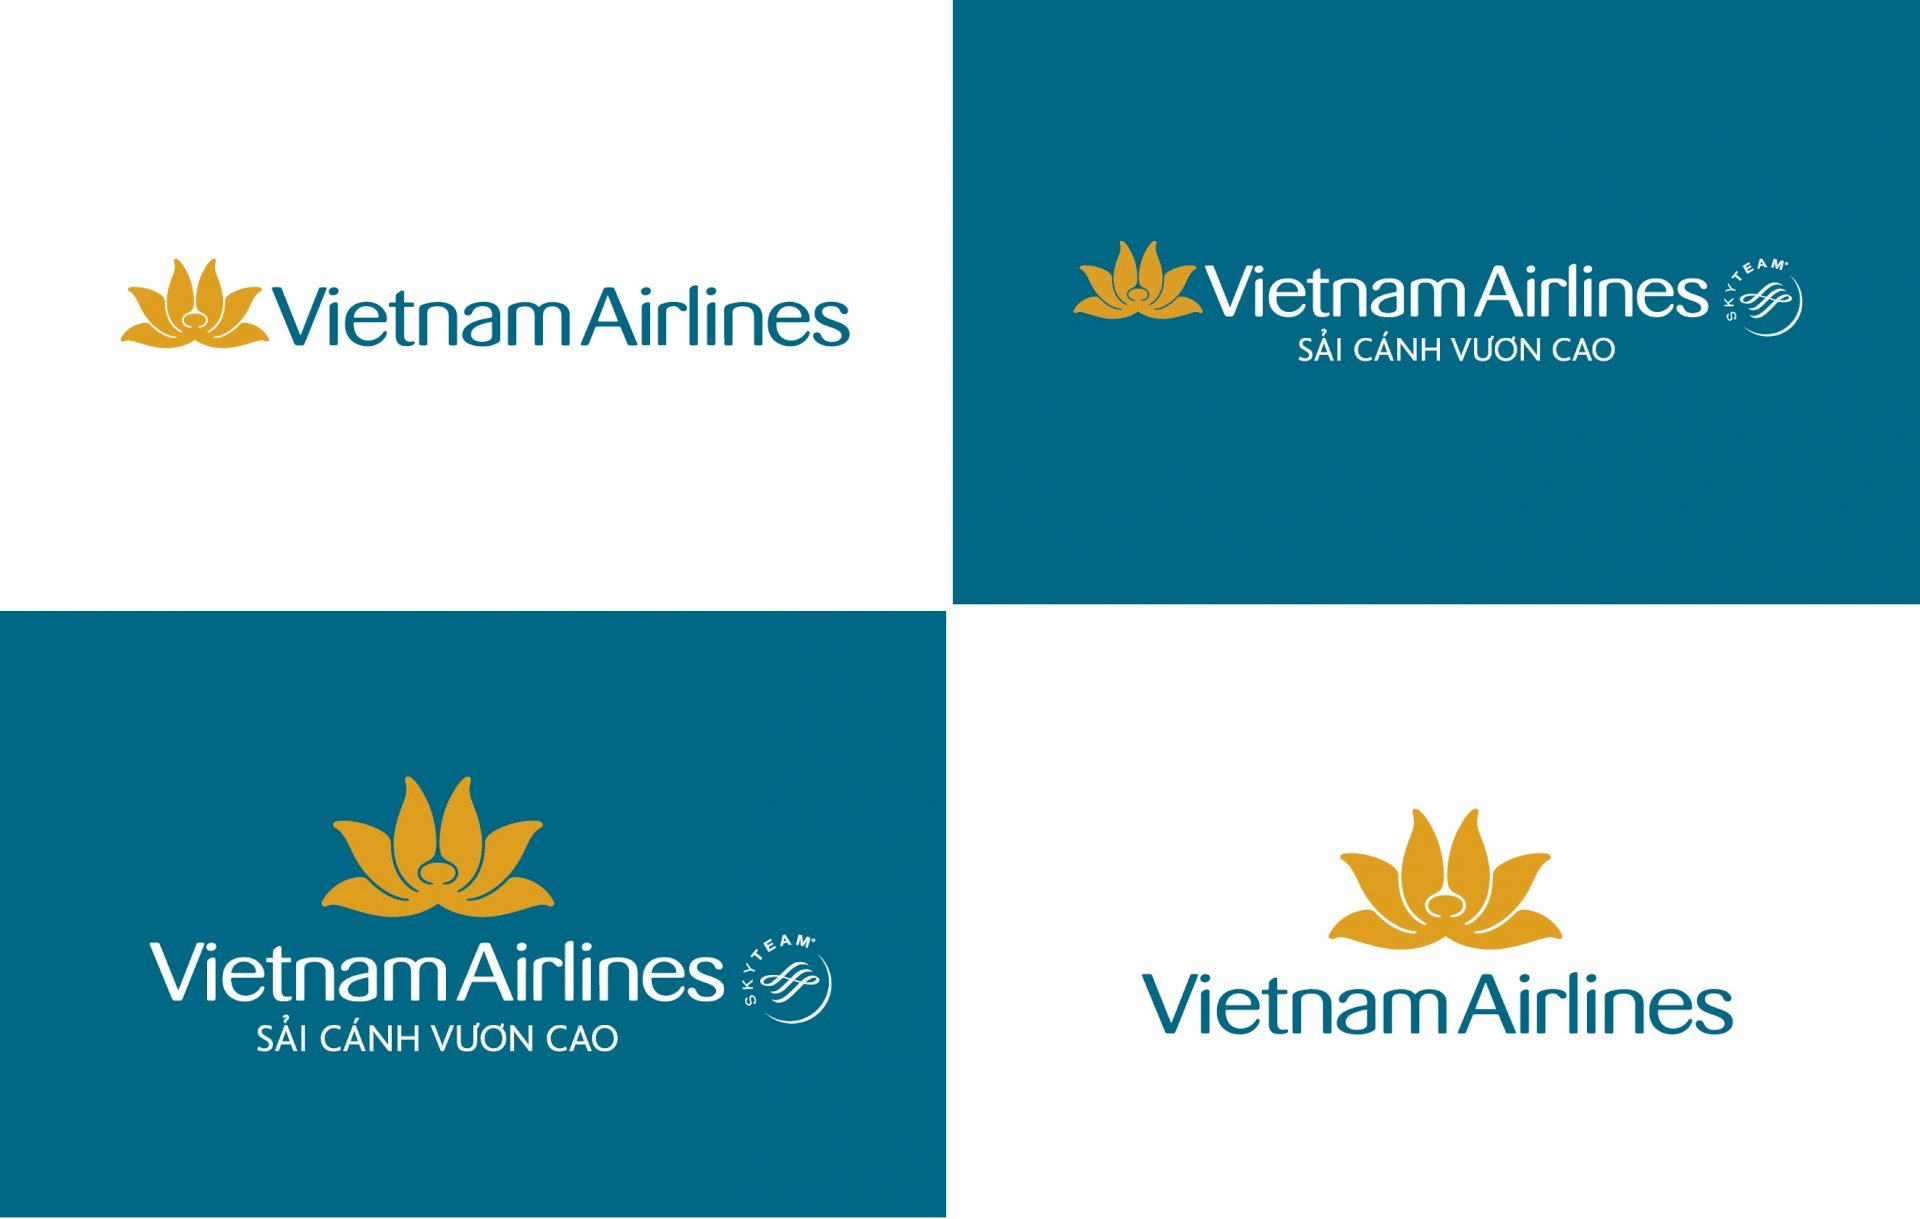 Có thể tải logo của Vietnam Airlines dưới định dạng nào?
